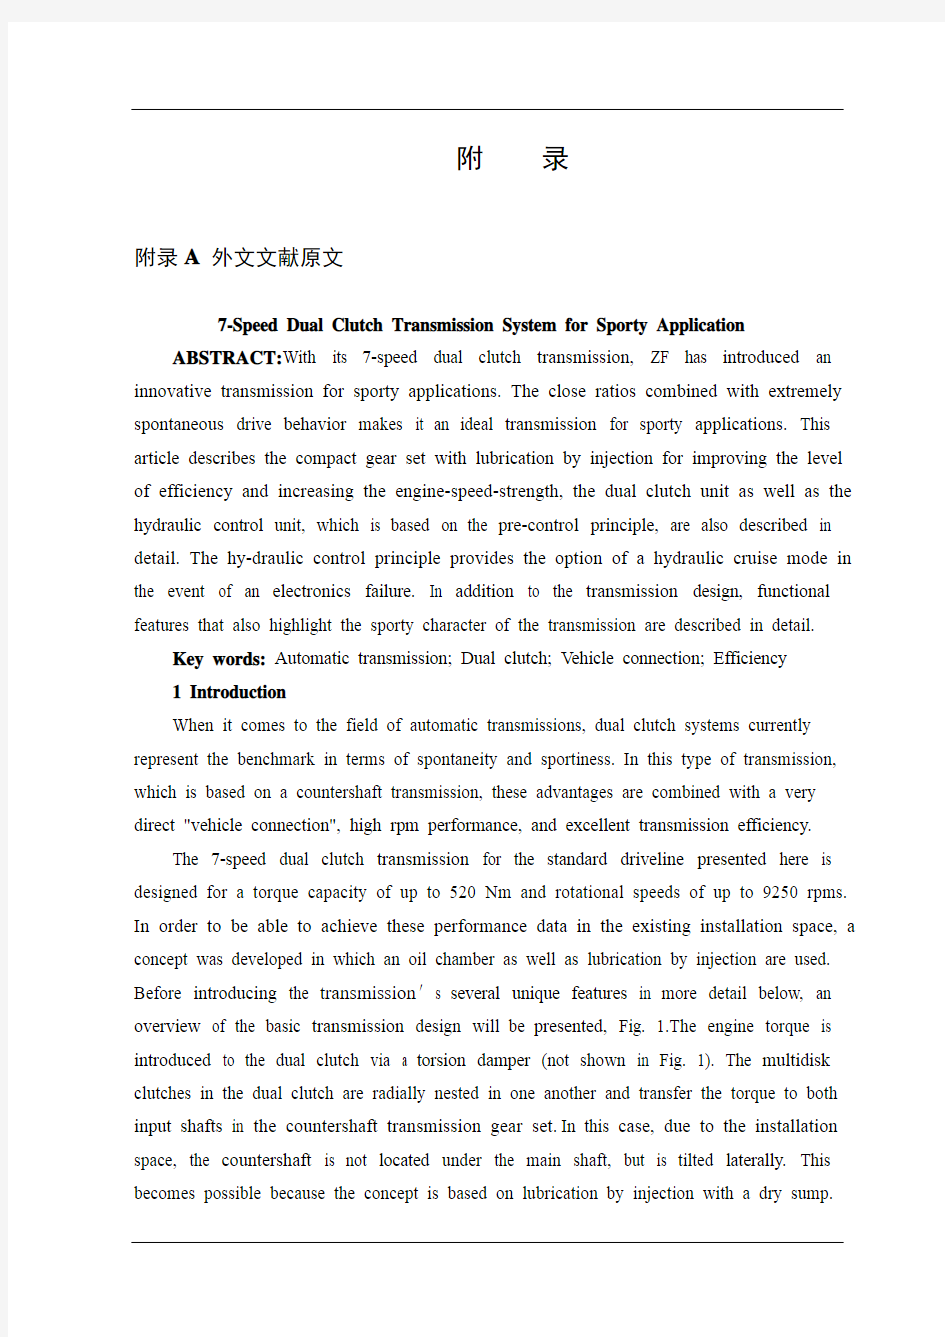 中英文文献翻译—运动型7速双离合器变速器系统